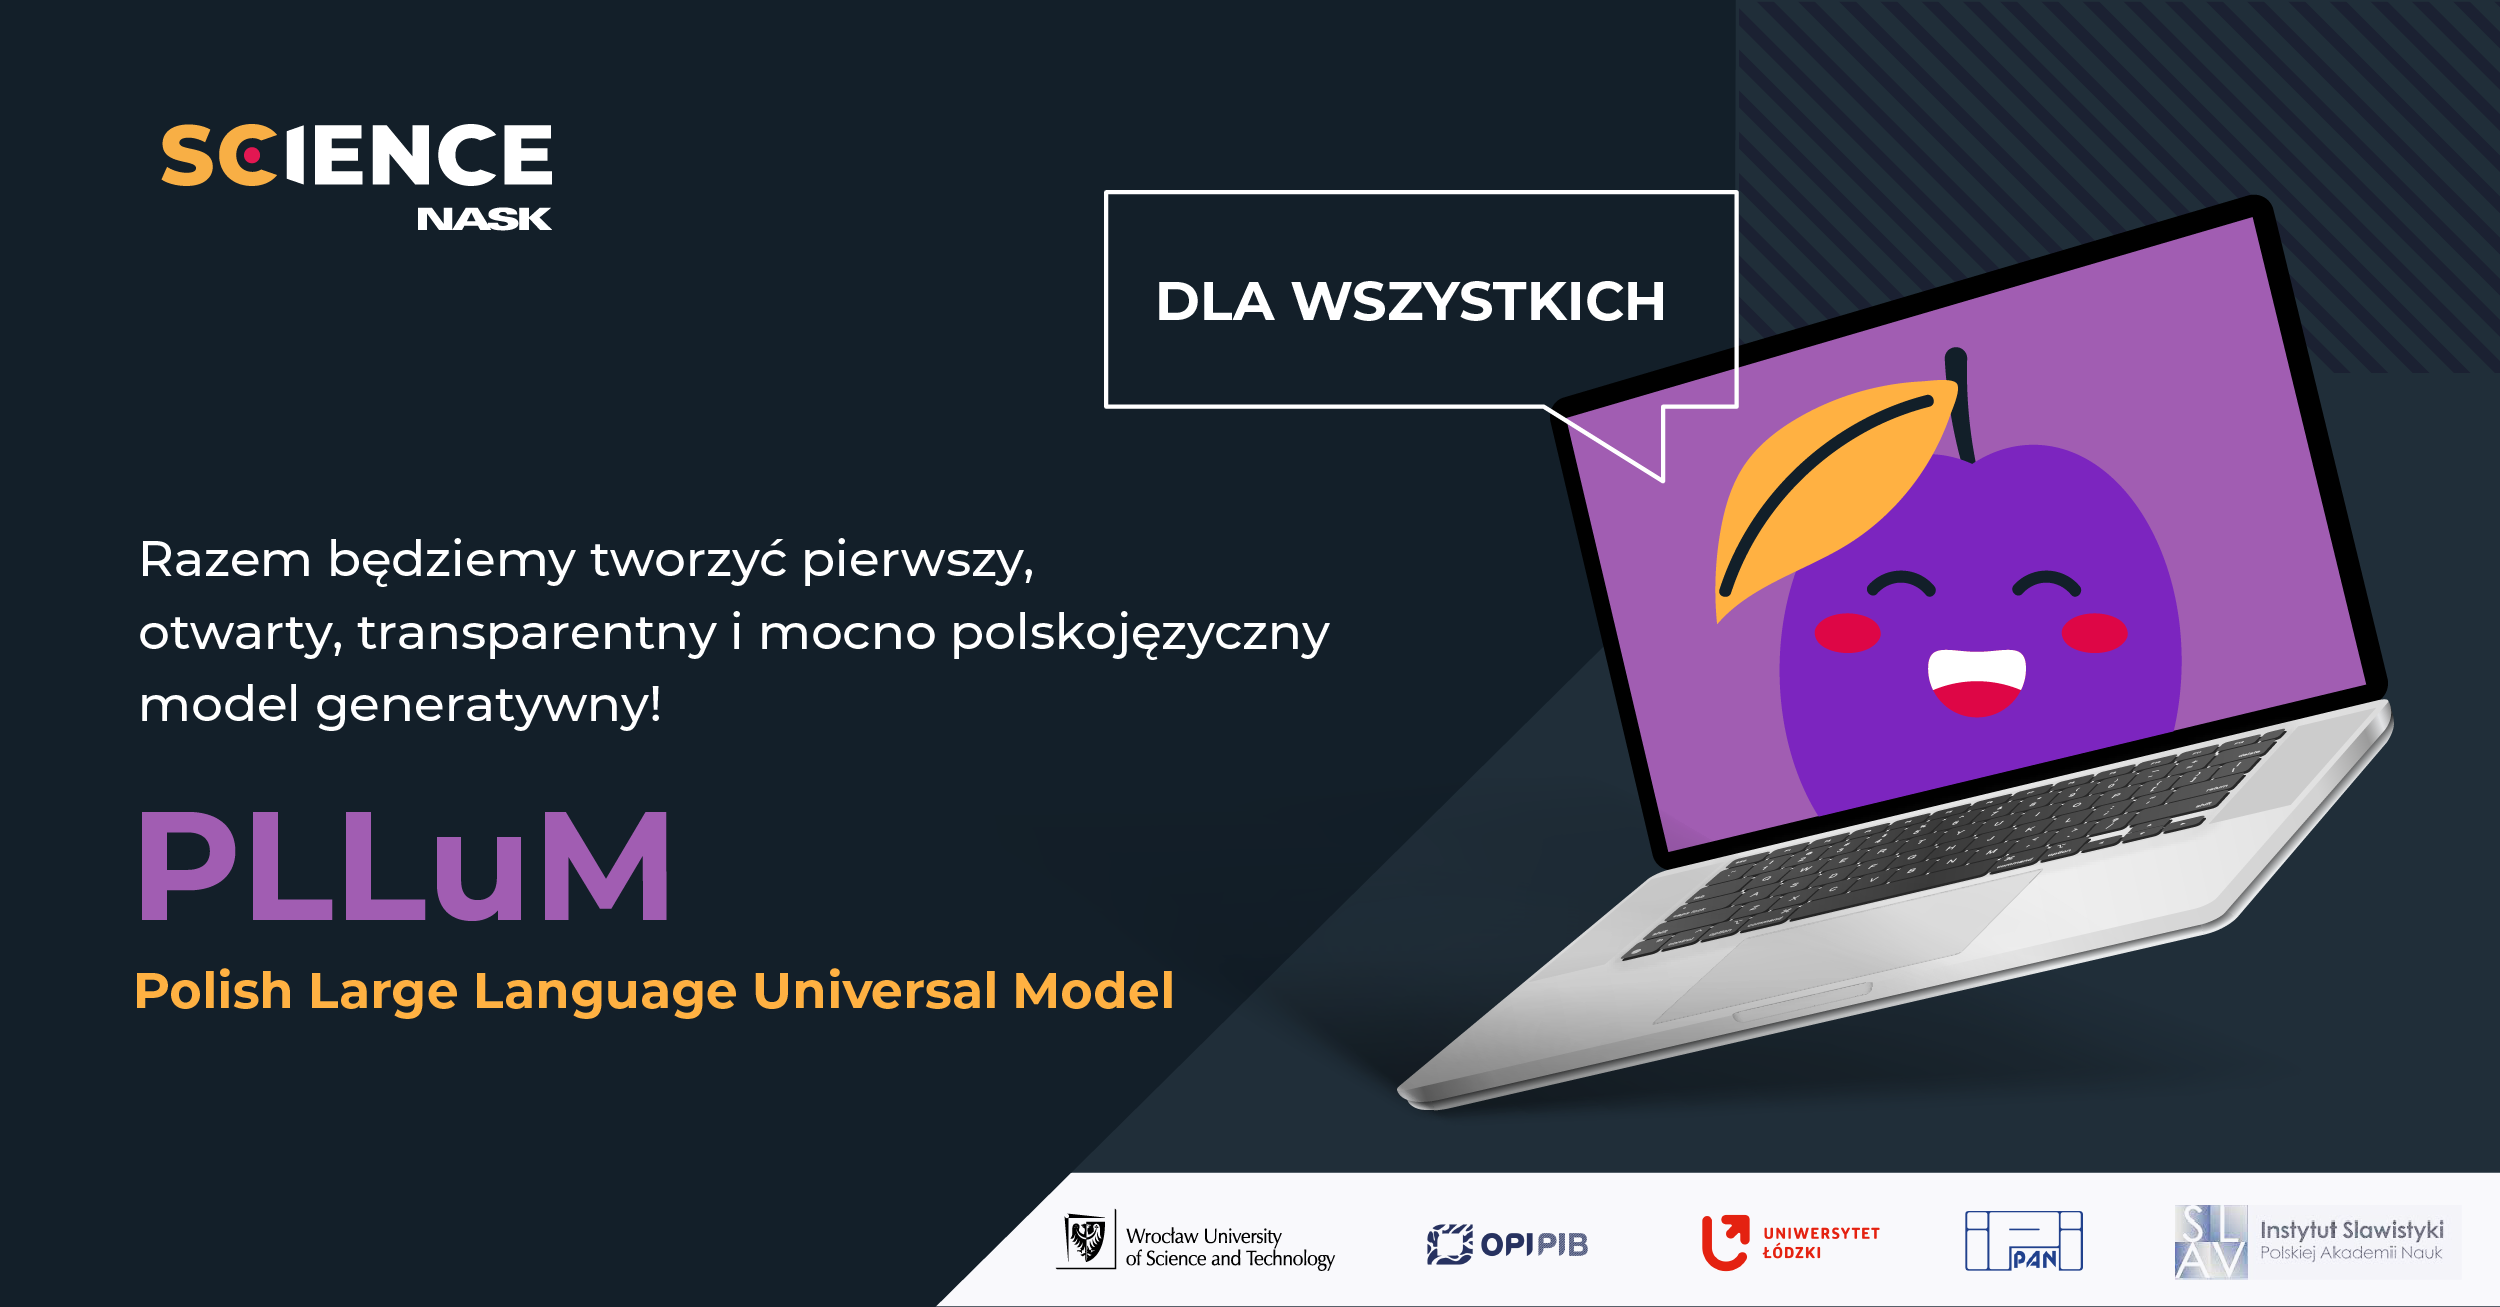 PLLuM - polska alternatywa dla ChatGPT, która mogłaby być lepsza i całkowicie darmowa